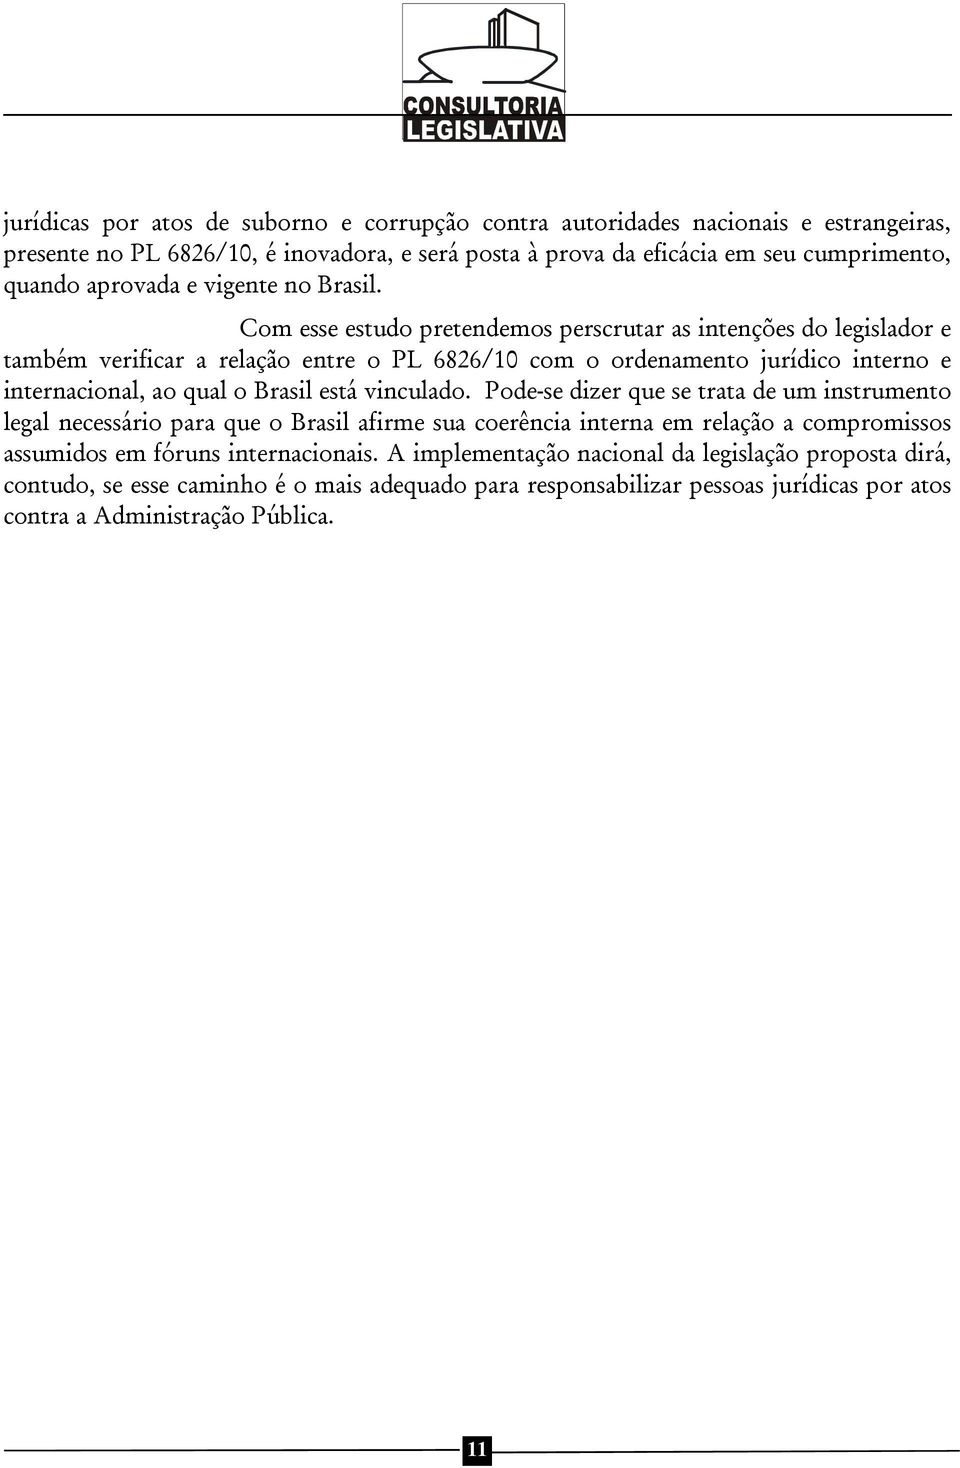 Com esse estudo pretendemos perscrutar as intenções do legislador e também verificar a relação entre o PL 6826/10 com o ordenamento jurídico interno e internacional, ao qual o Brasil está